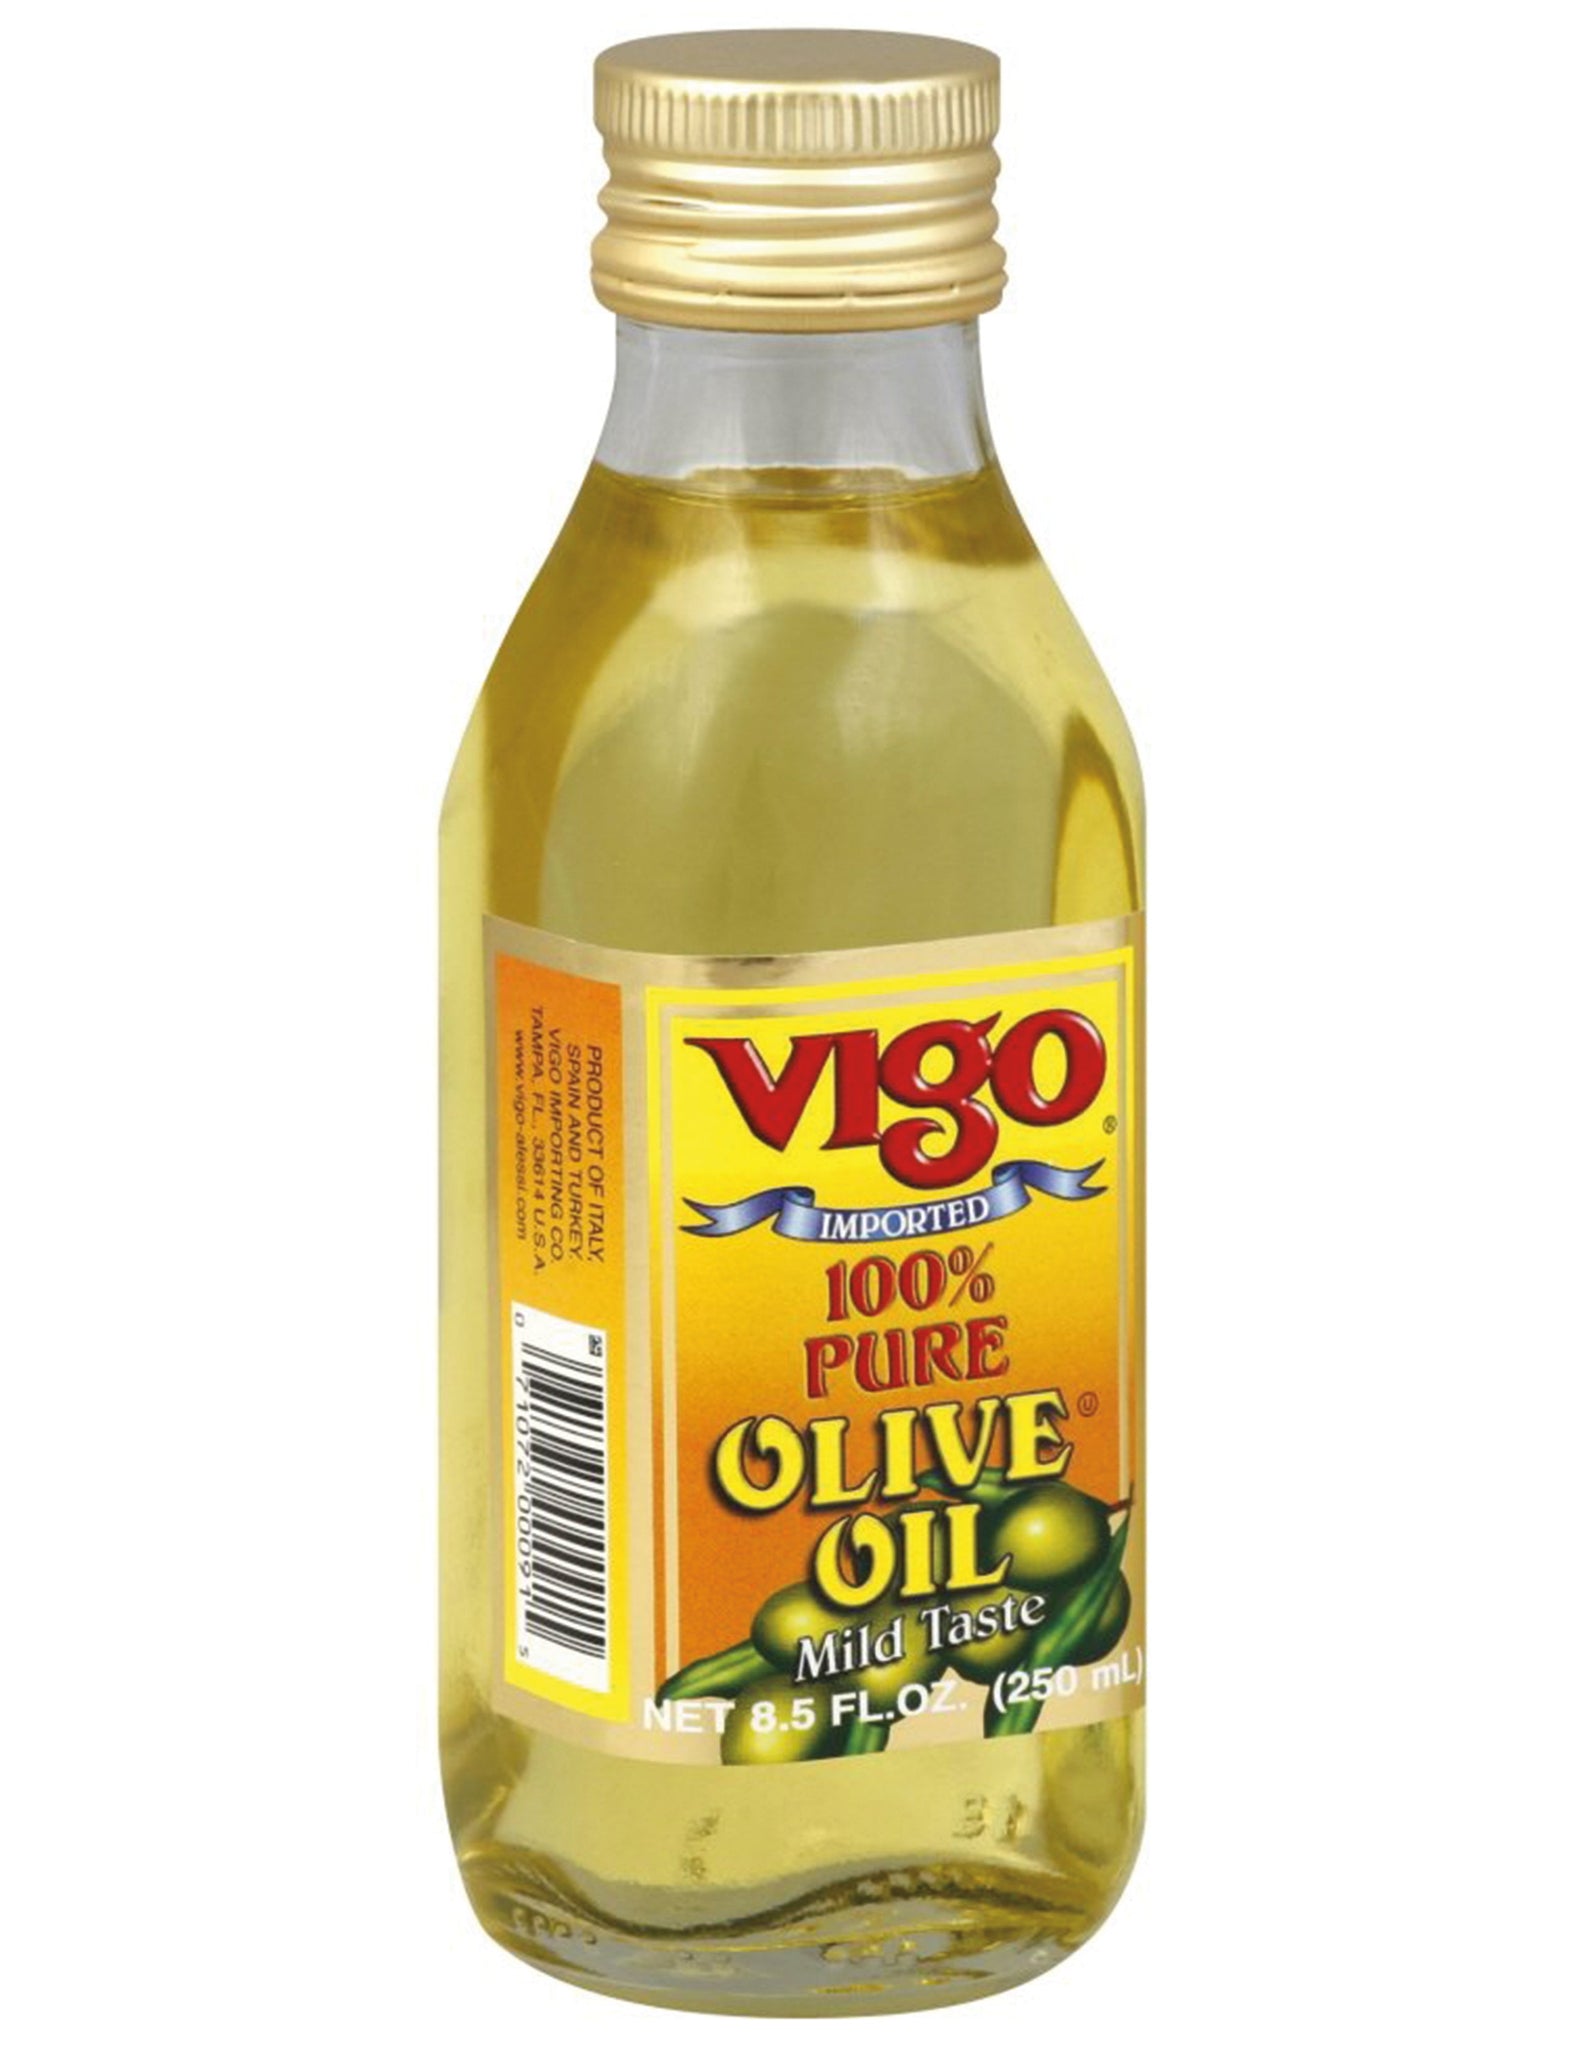 bel>Vigo Olive Oil, 3.85 fl oz